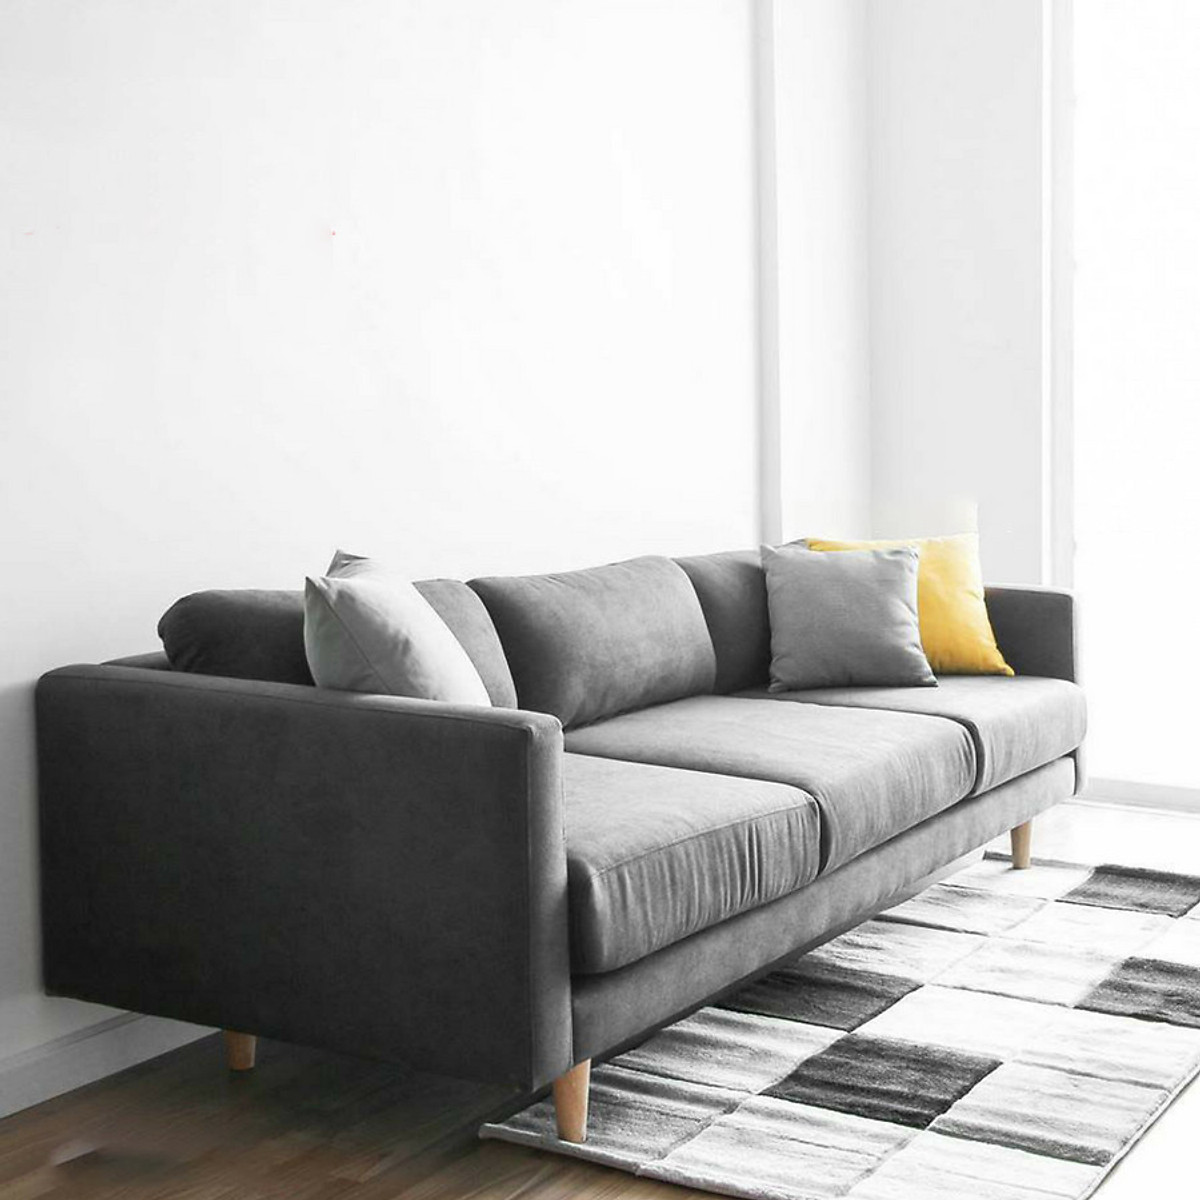 Sofa băng phòng khách chung cư